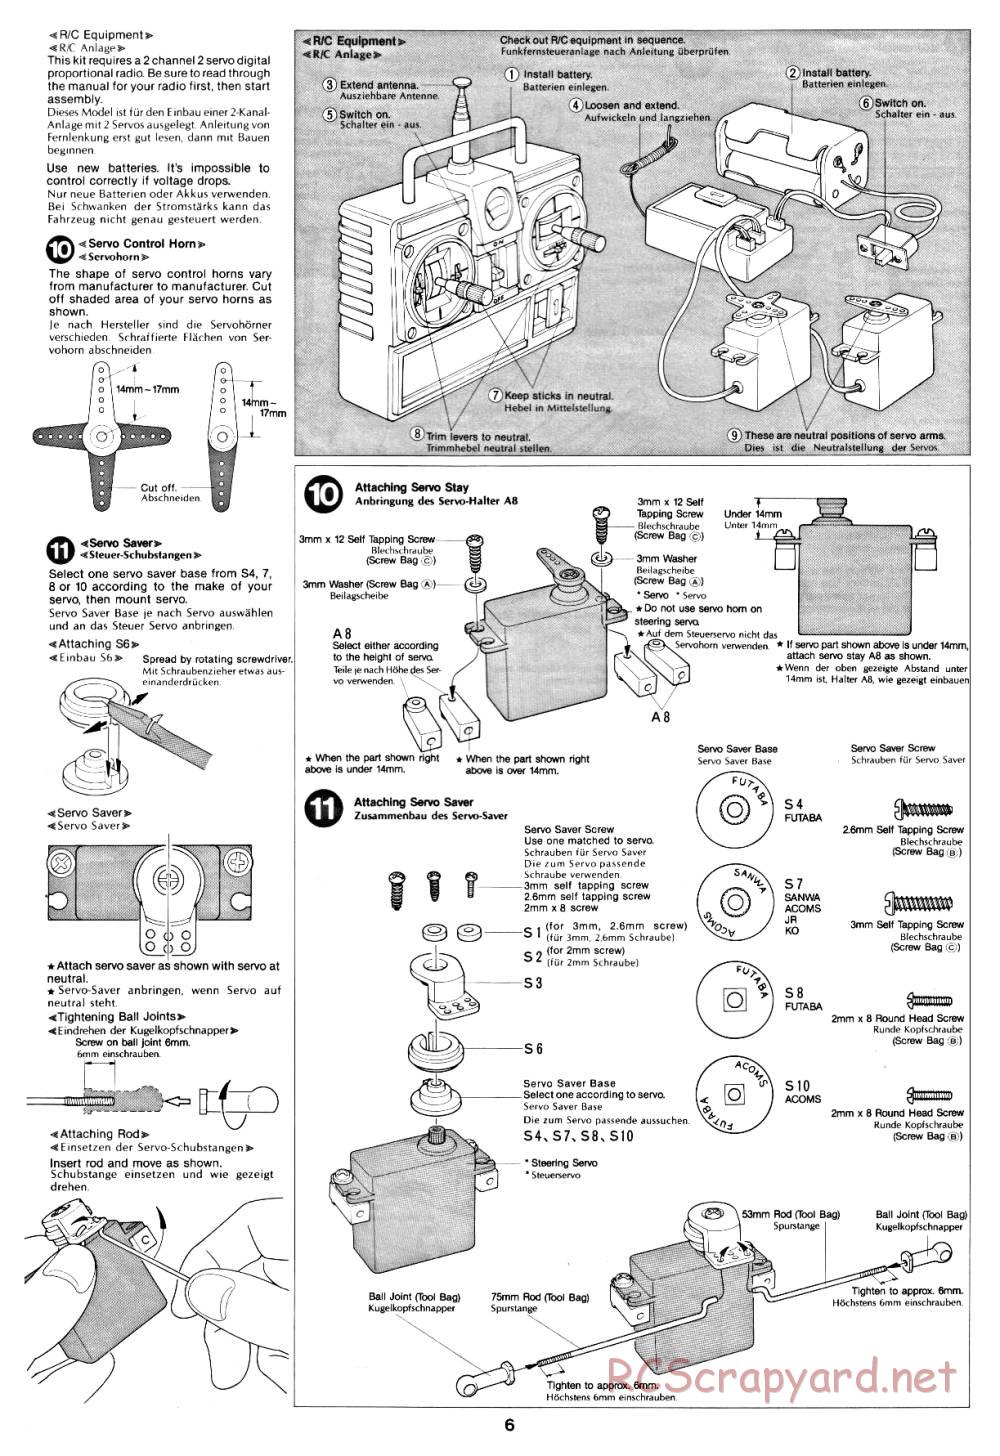 Tamiya - Fast Attack Vehicle - 58046 - Manual - Page 6